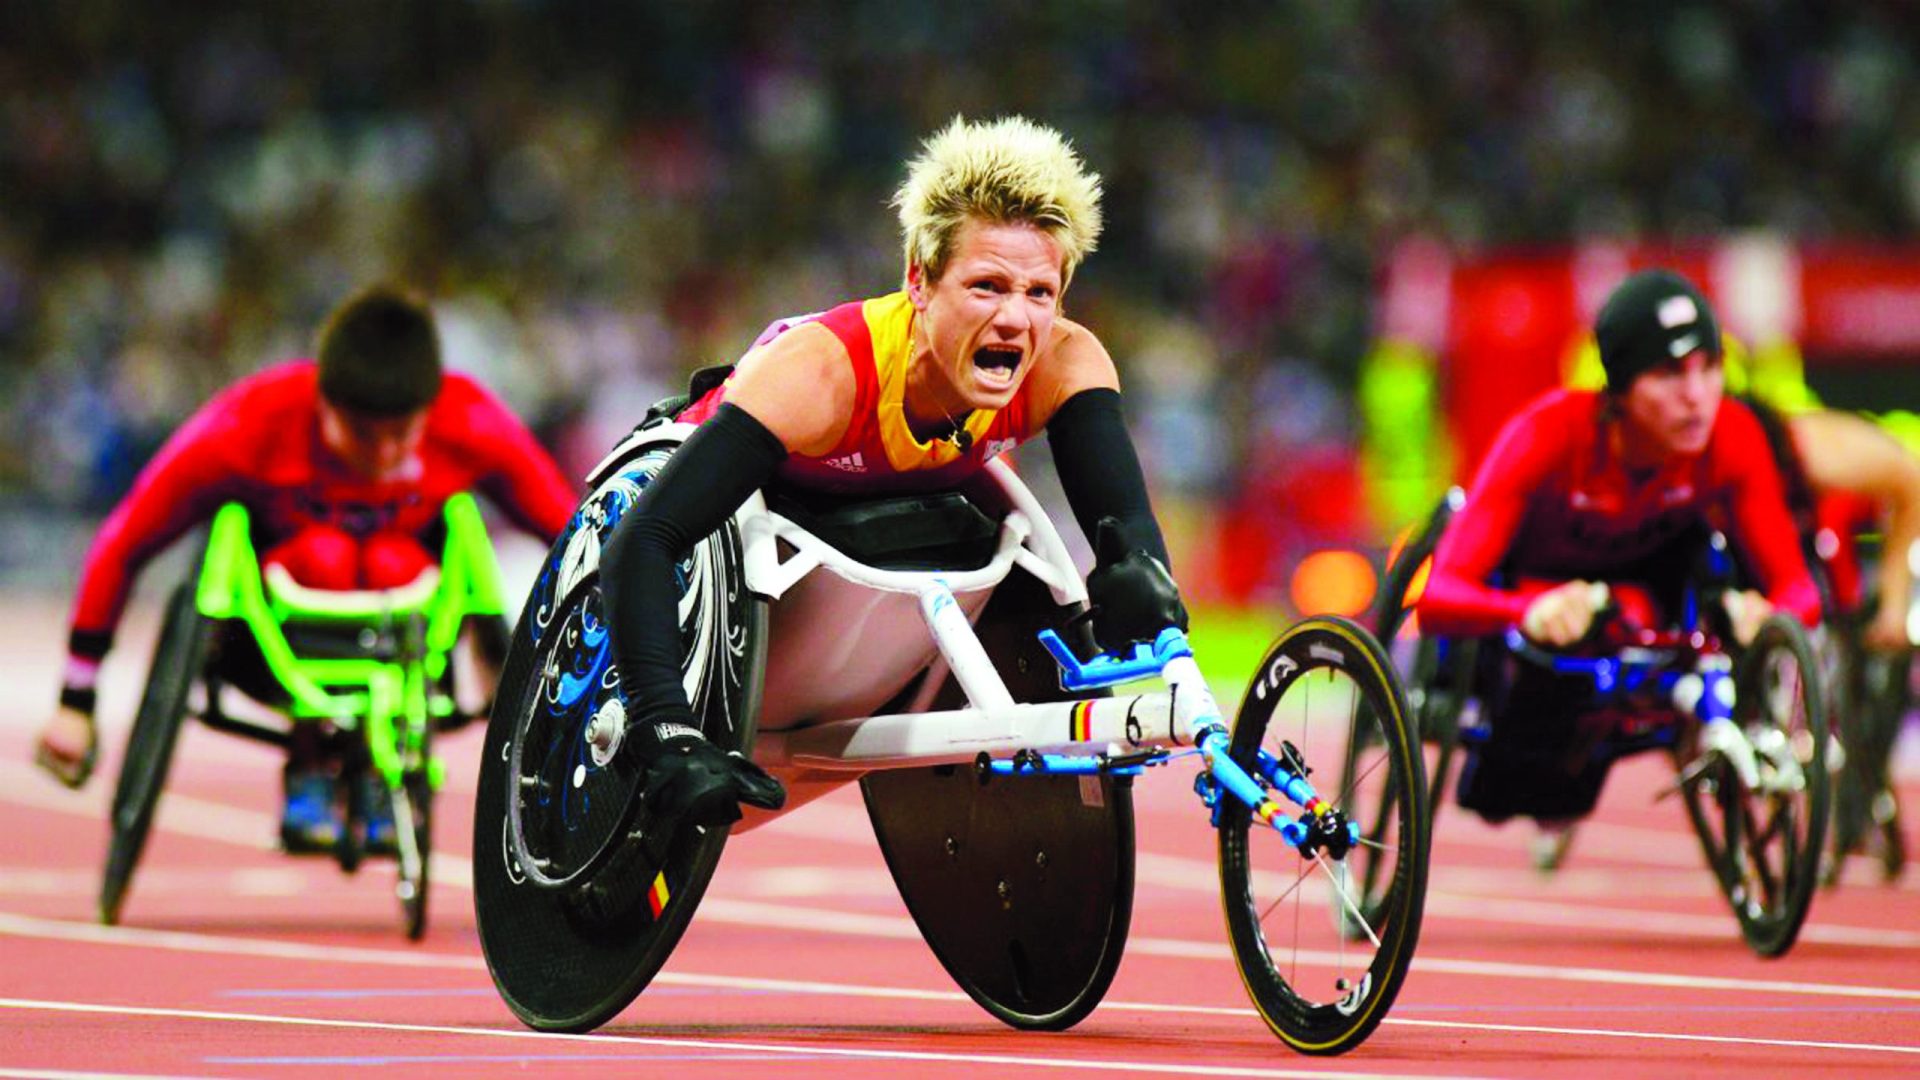 Vervoort, a atleta paralímpica que se vai suicidar depois dos Jogos do Rio